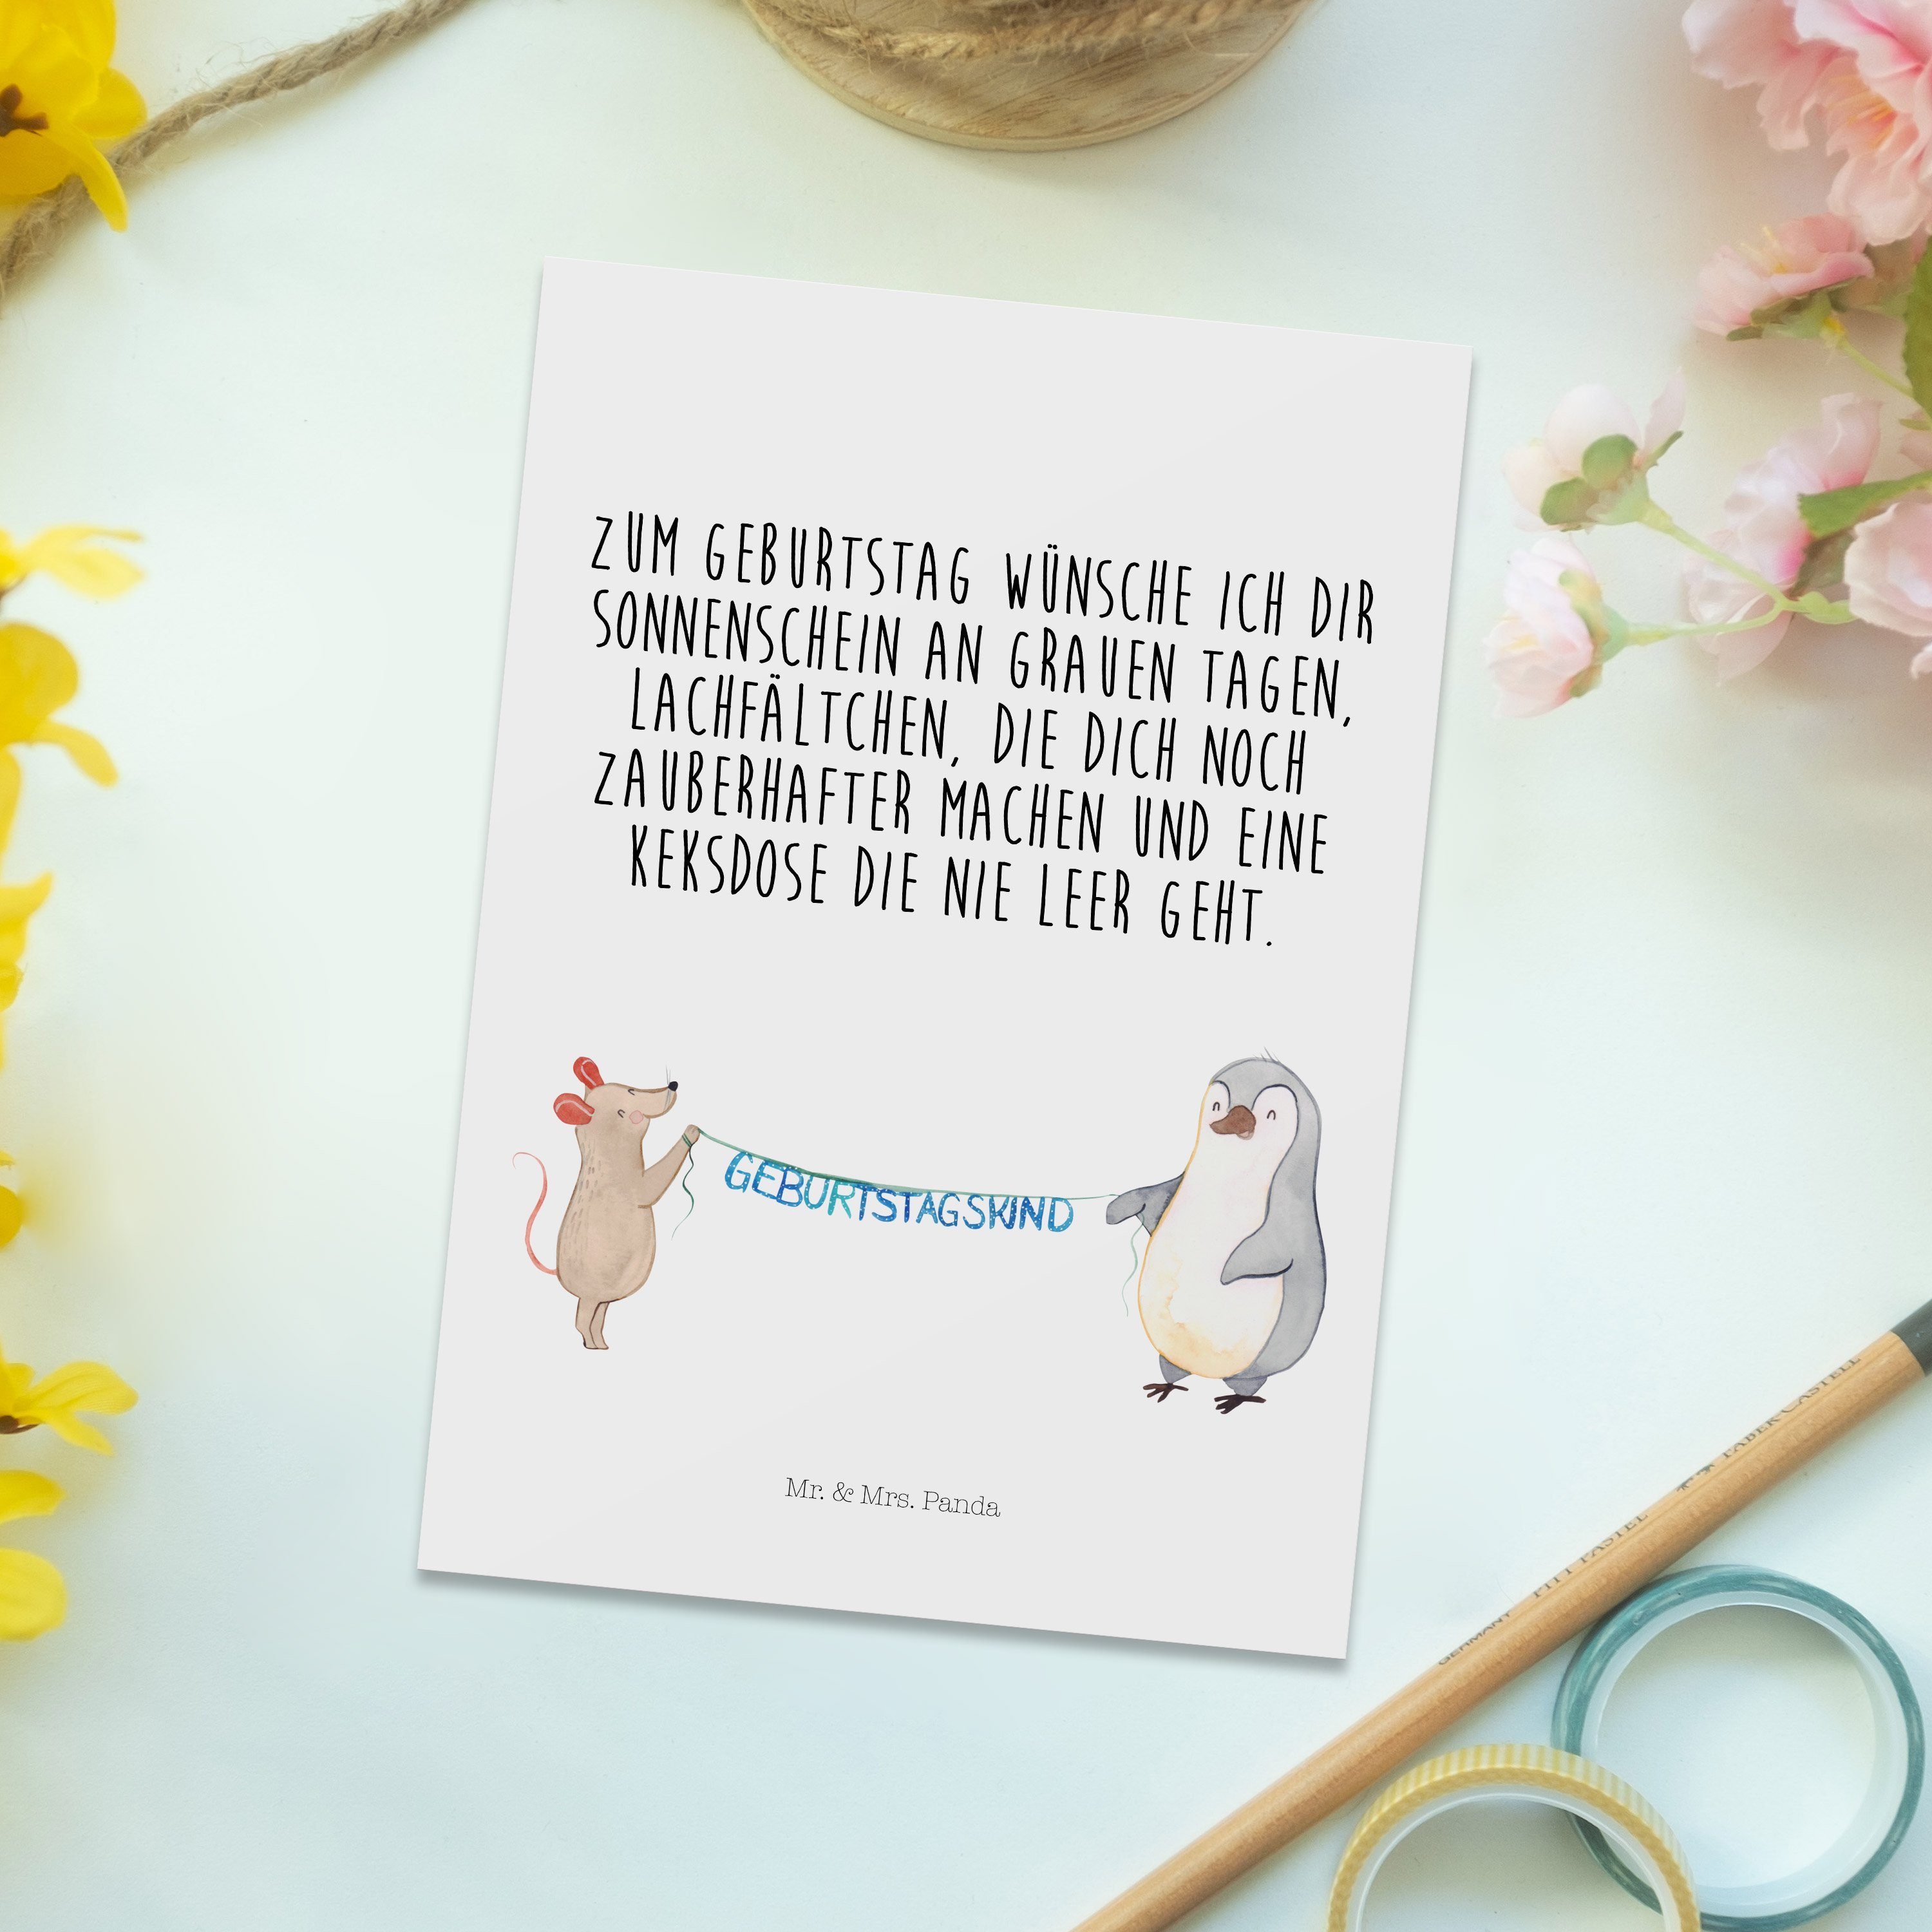 Pinguin - Birthday, Geschenk, Happy Geburtstag Weiß Maus Mrs. & Postkarte - Mr. Geschenkka Panda